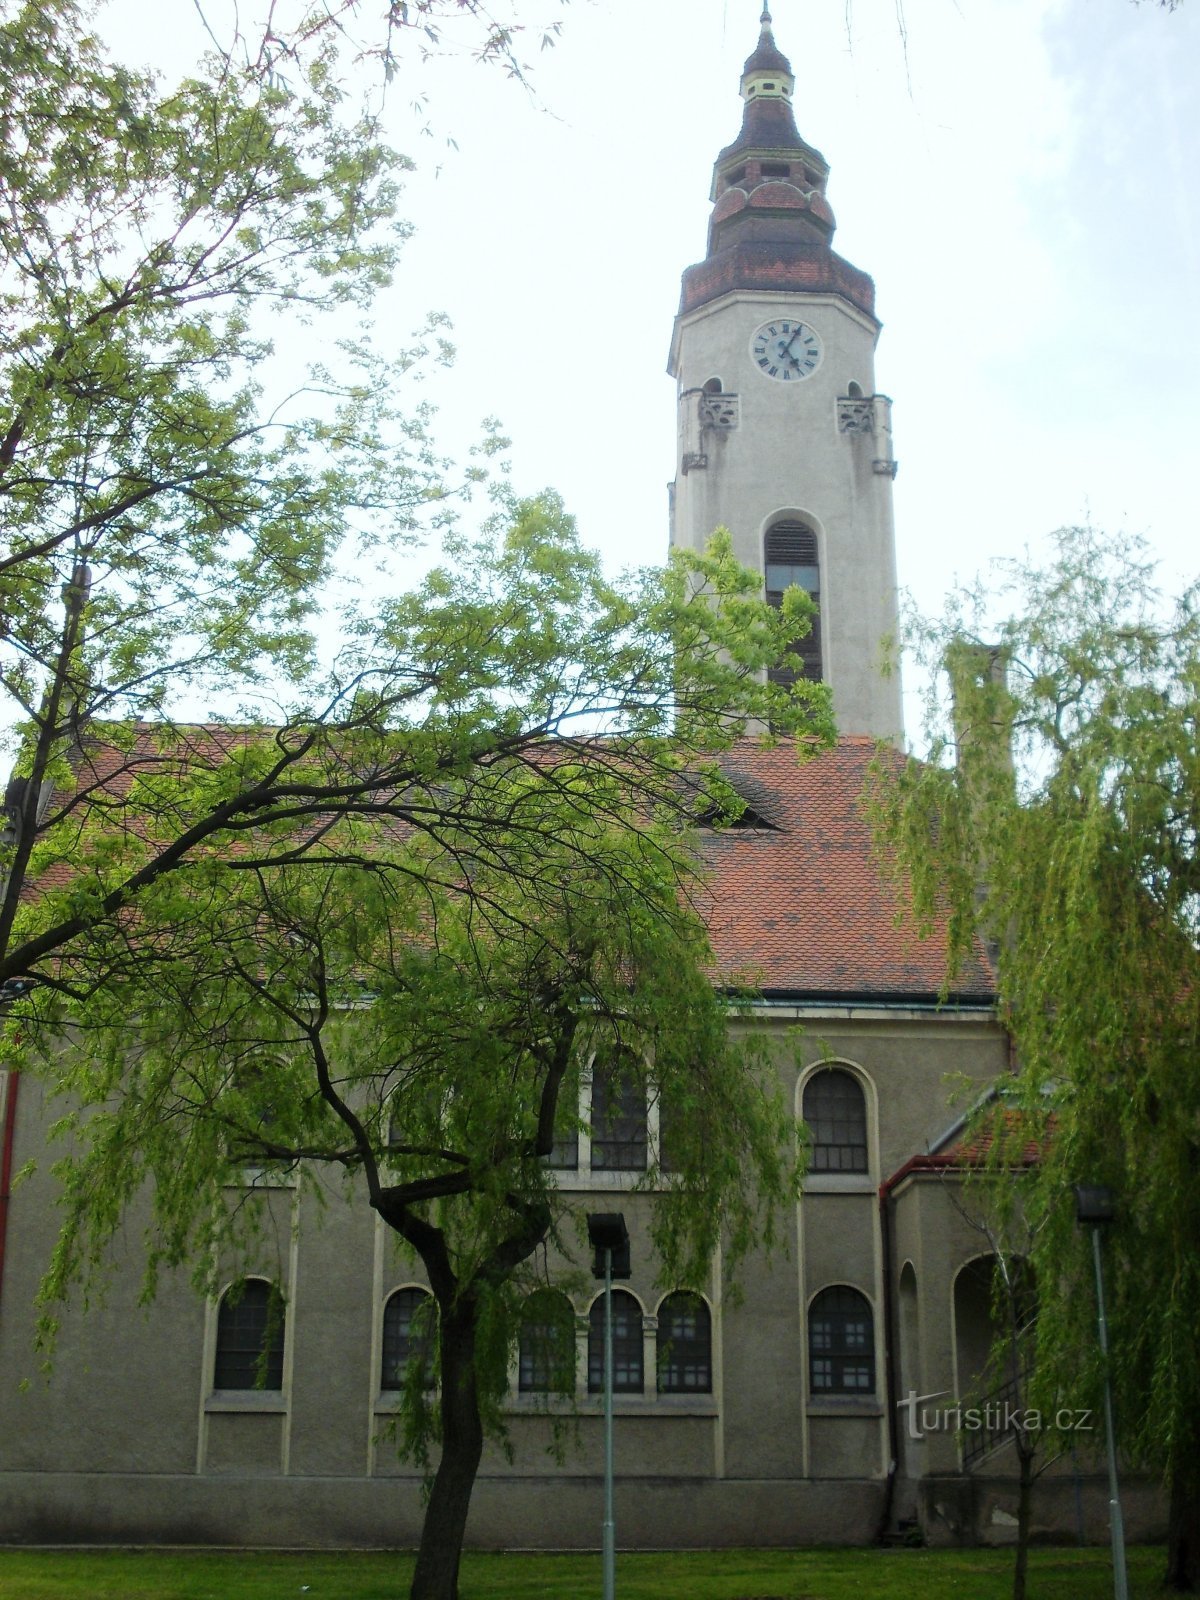 μια εκκλησία με πύργο ύψους σχεδόν 42 μέτρων